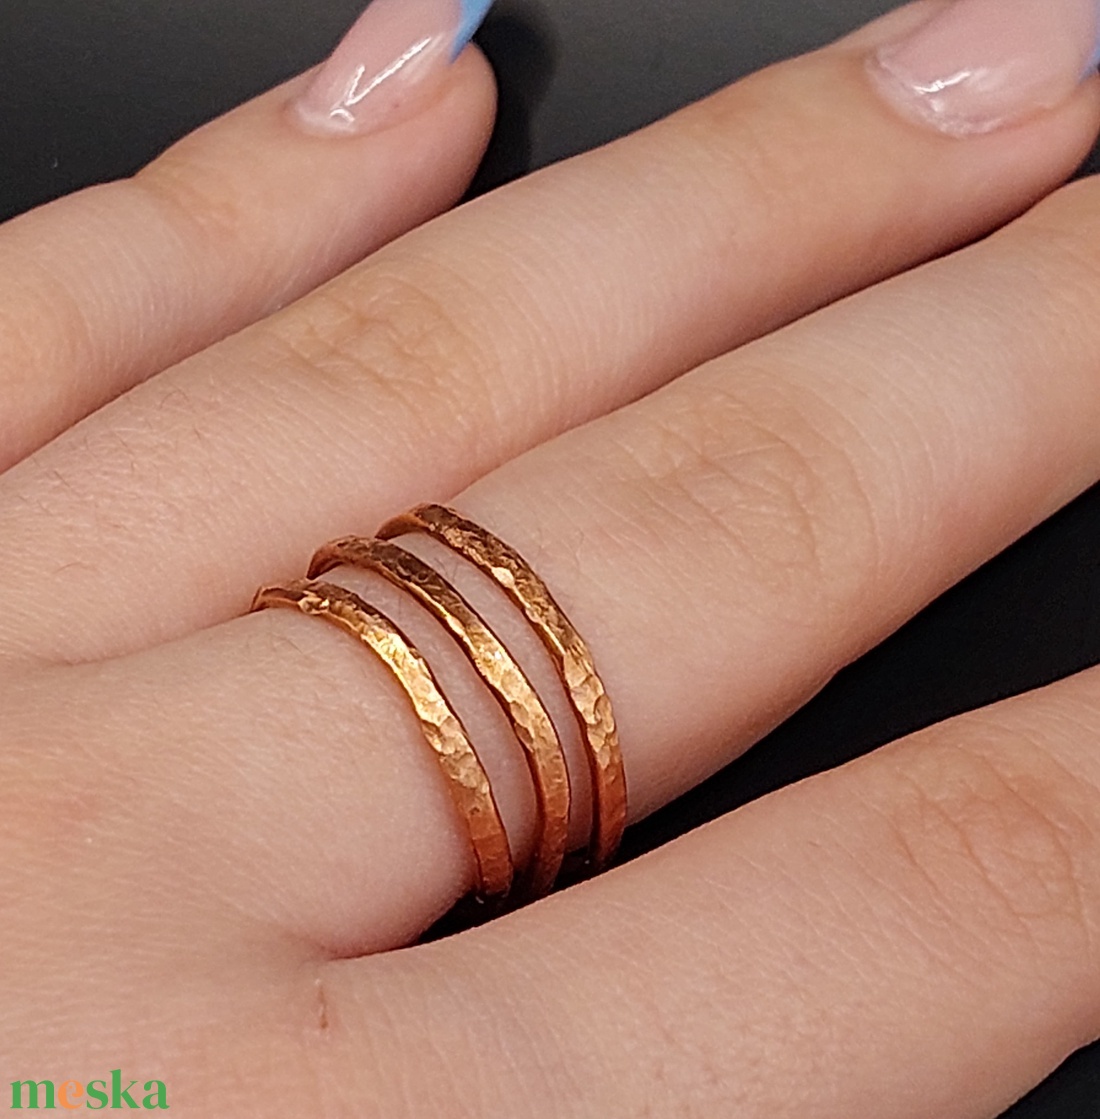 Egyedi, különleges design gyűrű vörösrézből  - ékszer - gyűrű - fonódó gyűrű - Meska.hu